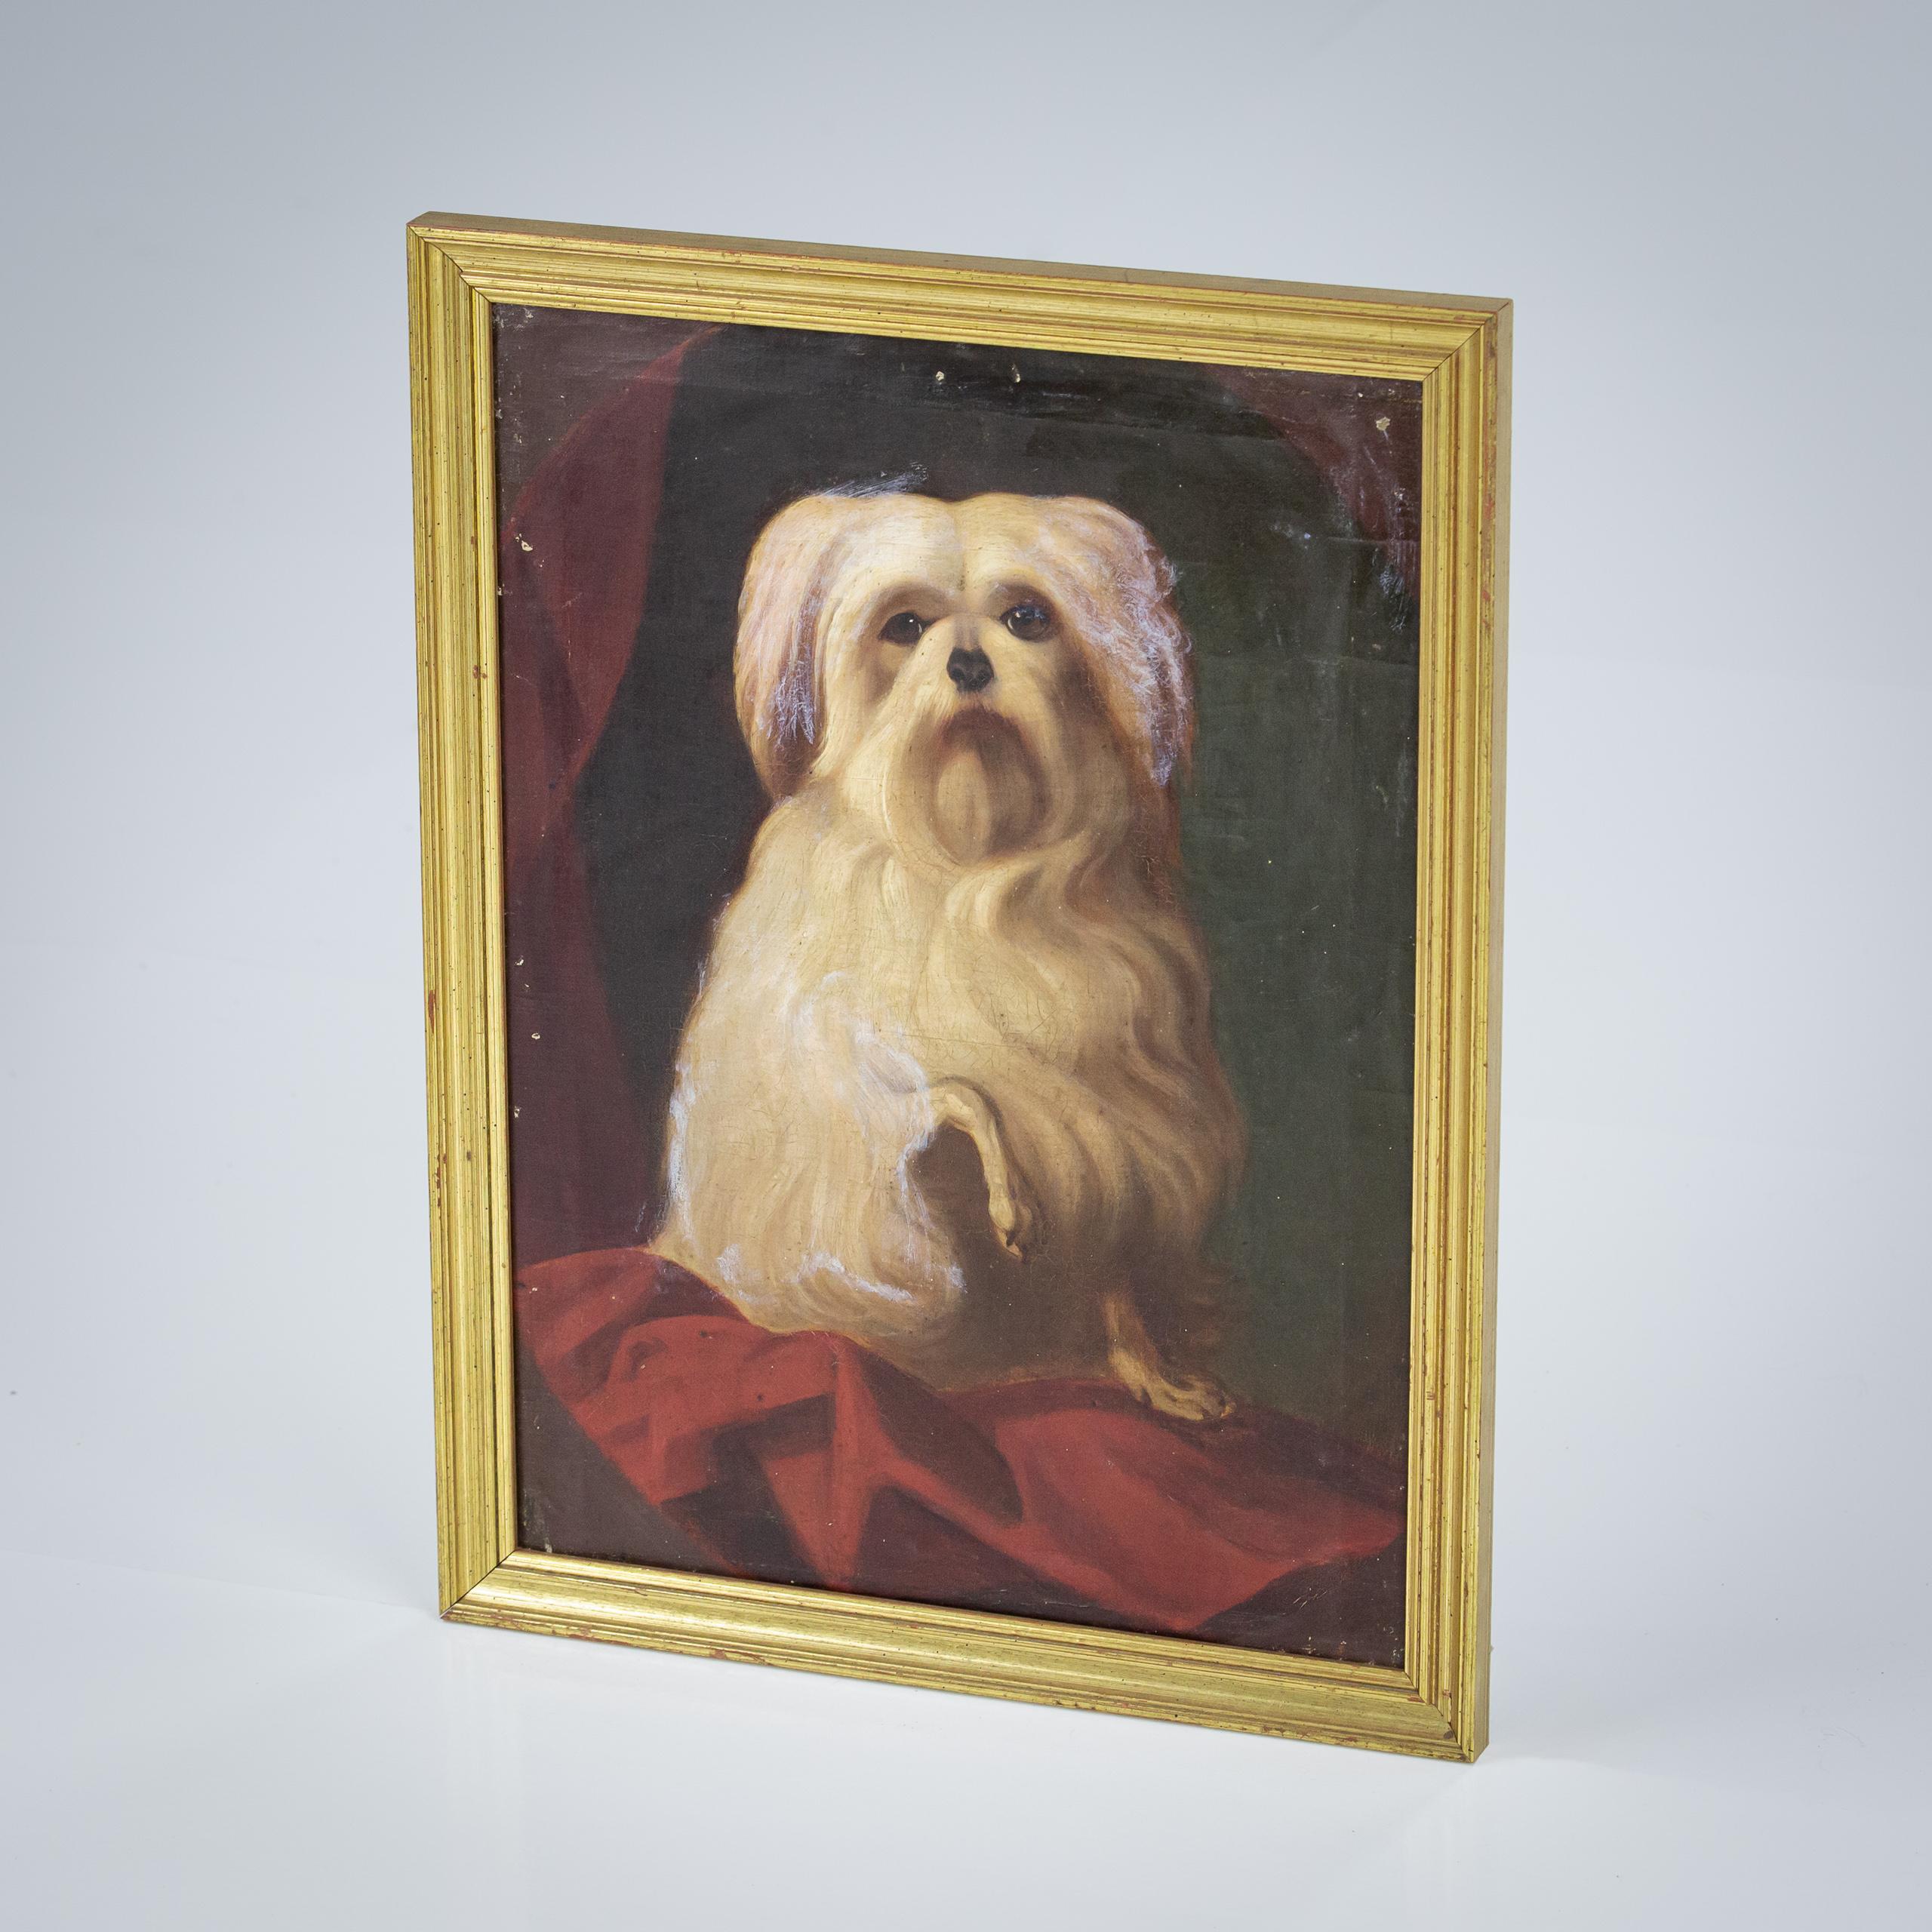 Charismatique portrait de chien à l'huile sur toile du 19e siècle, patte offerte. 
Quelques floraisons, principalement sur les oreilles et le côté gauche du chien.
Maison de campagne intacte avec quelques petites imperfections 
France, Circa 1880.